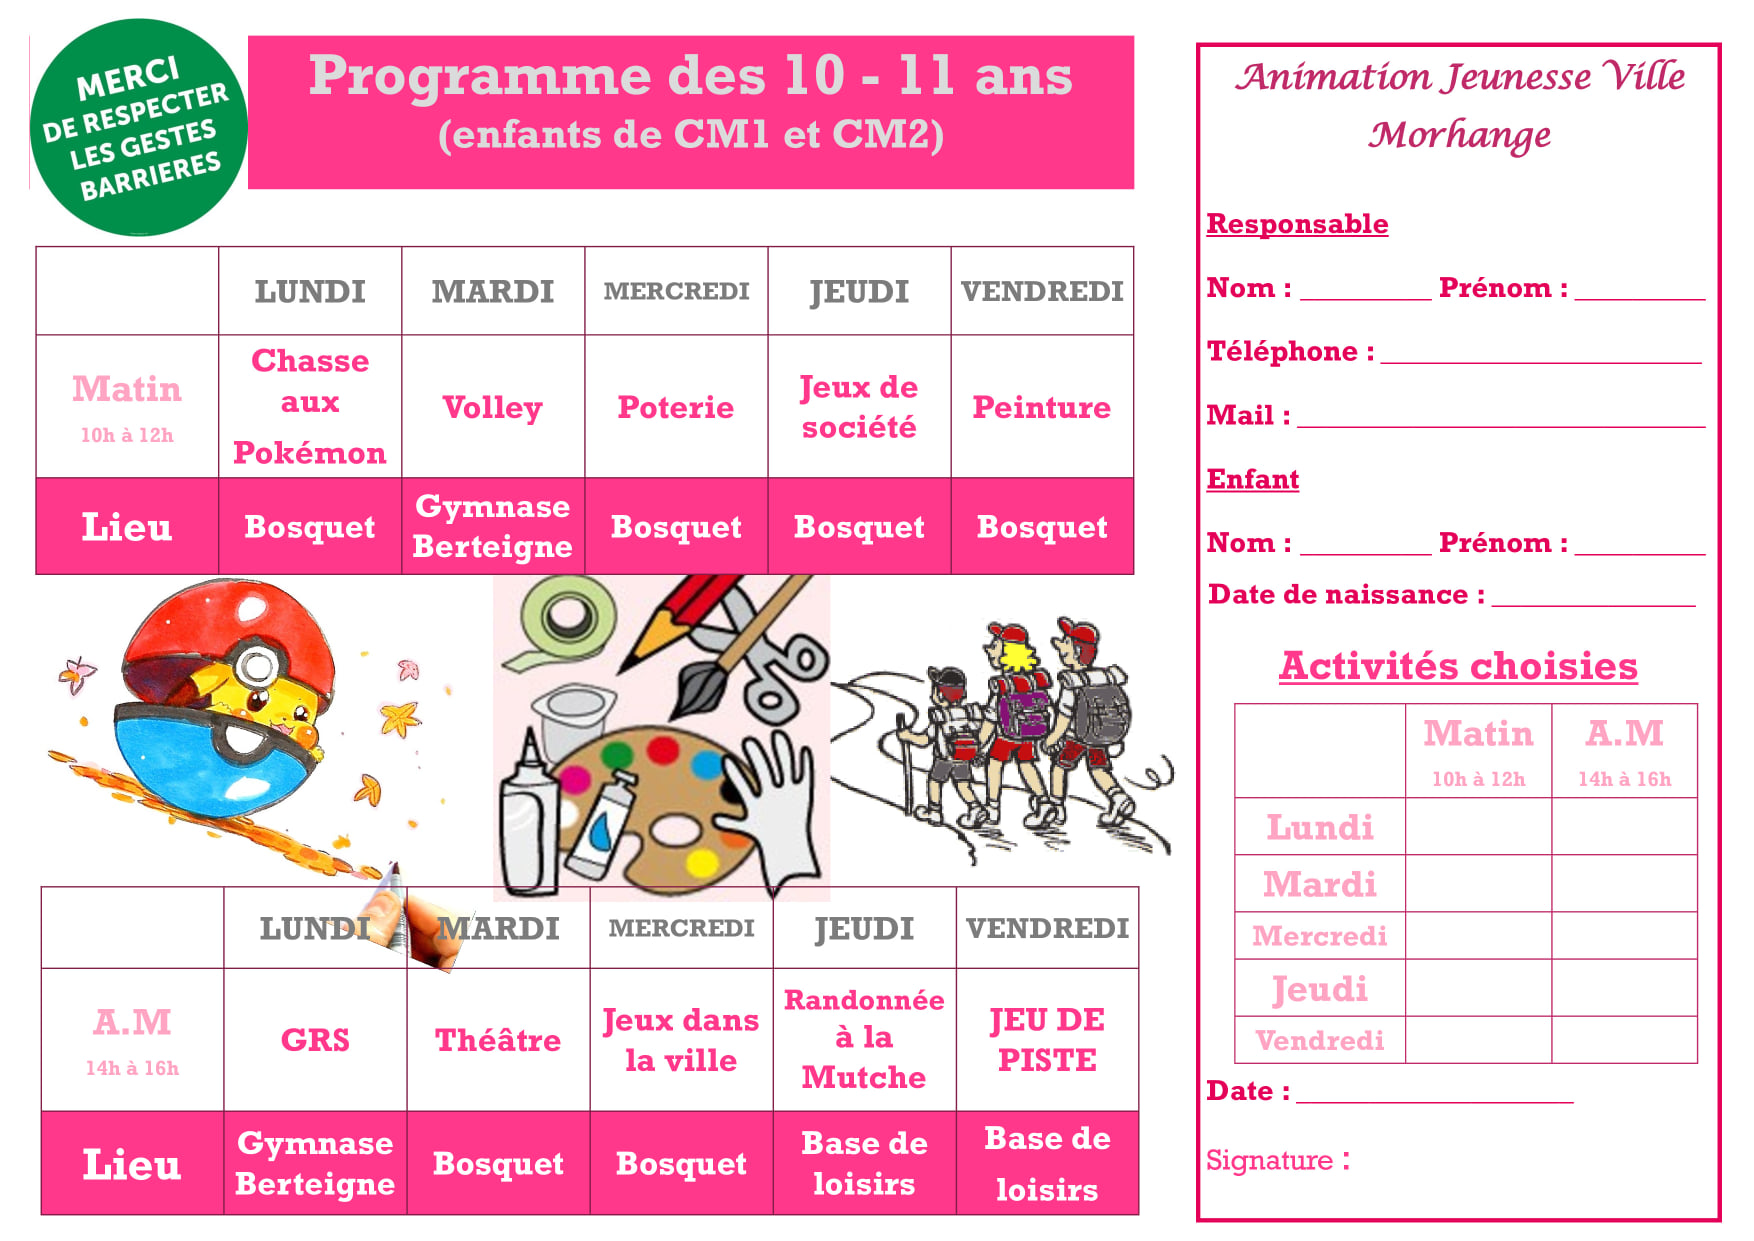 Programme 10-11 ans